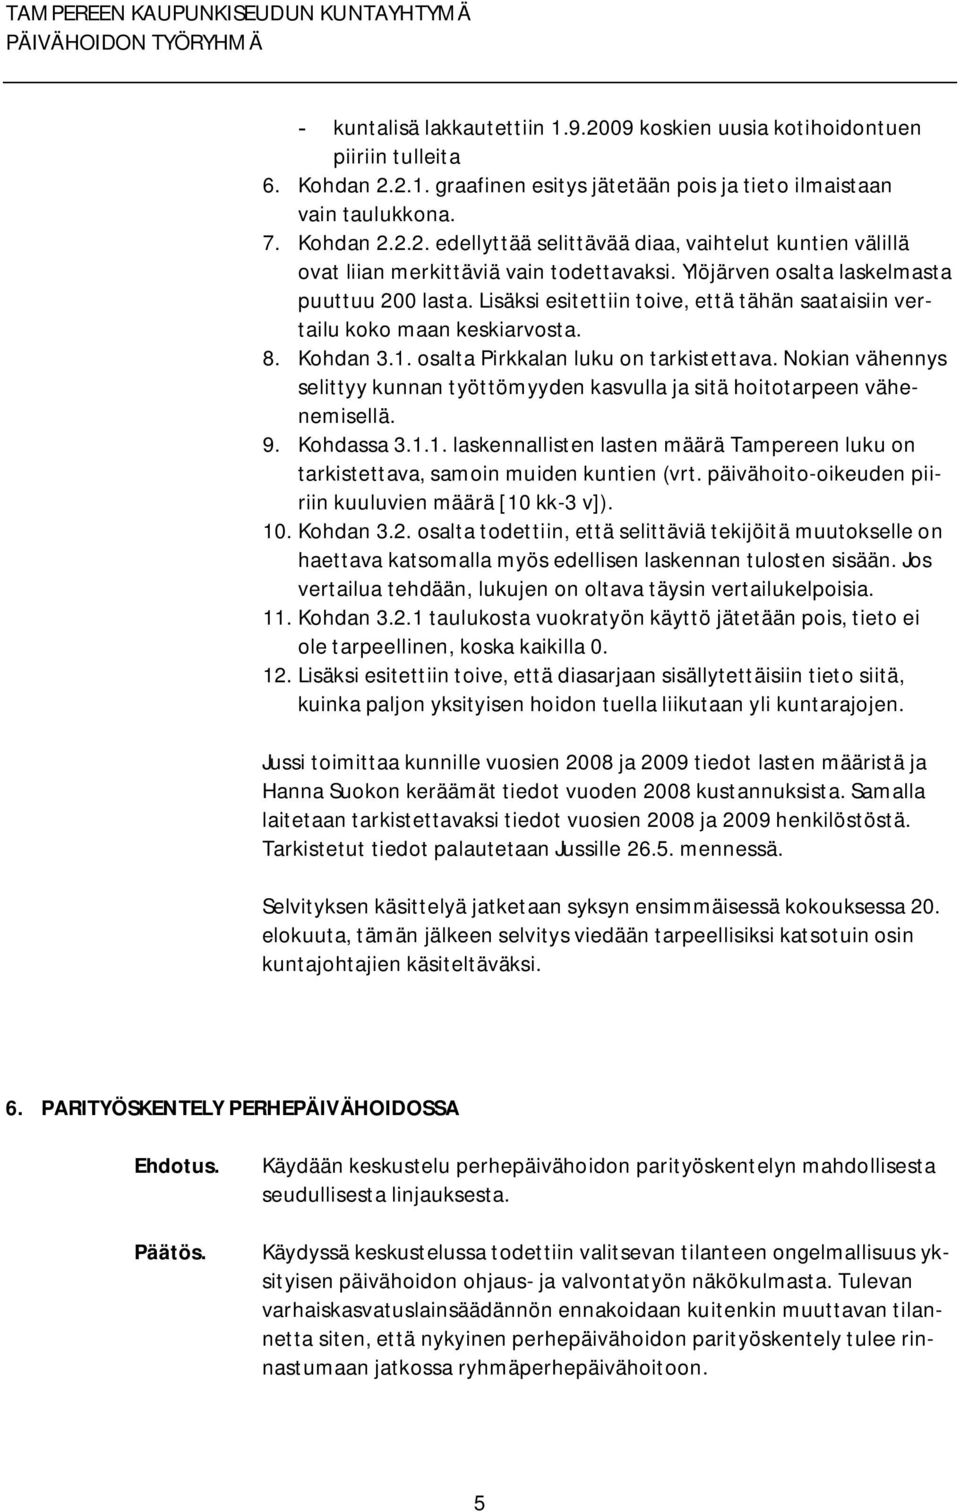 Nokian vähennys selittyy kunnan työttömyyden kasvulla ja sitä hoitotarpeen vähenemisellä. 9. Kohdassa 3.1.1. laskennallisten lasten määrä Tampereen luku on tarkistettava, samoin muiden kuntien (vrt.